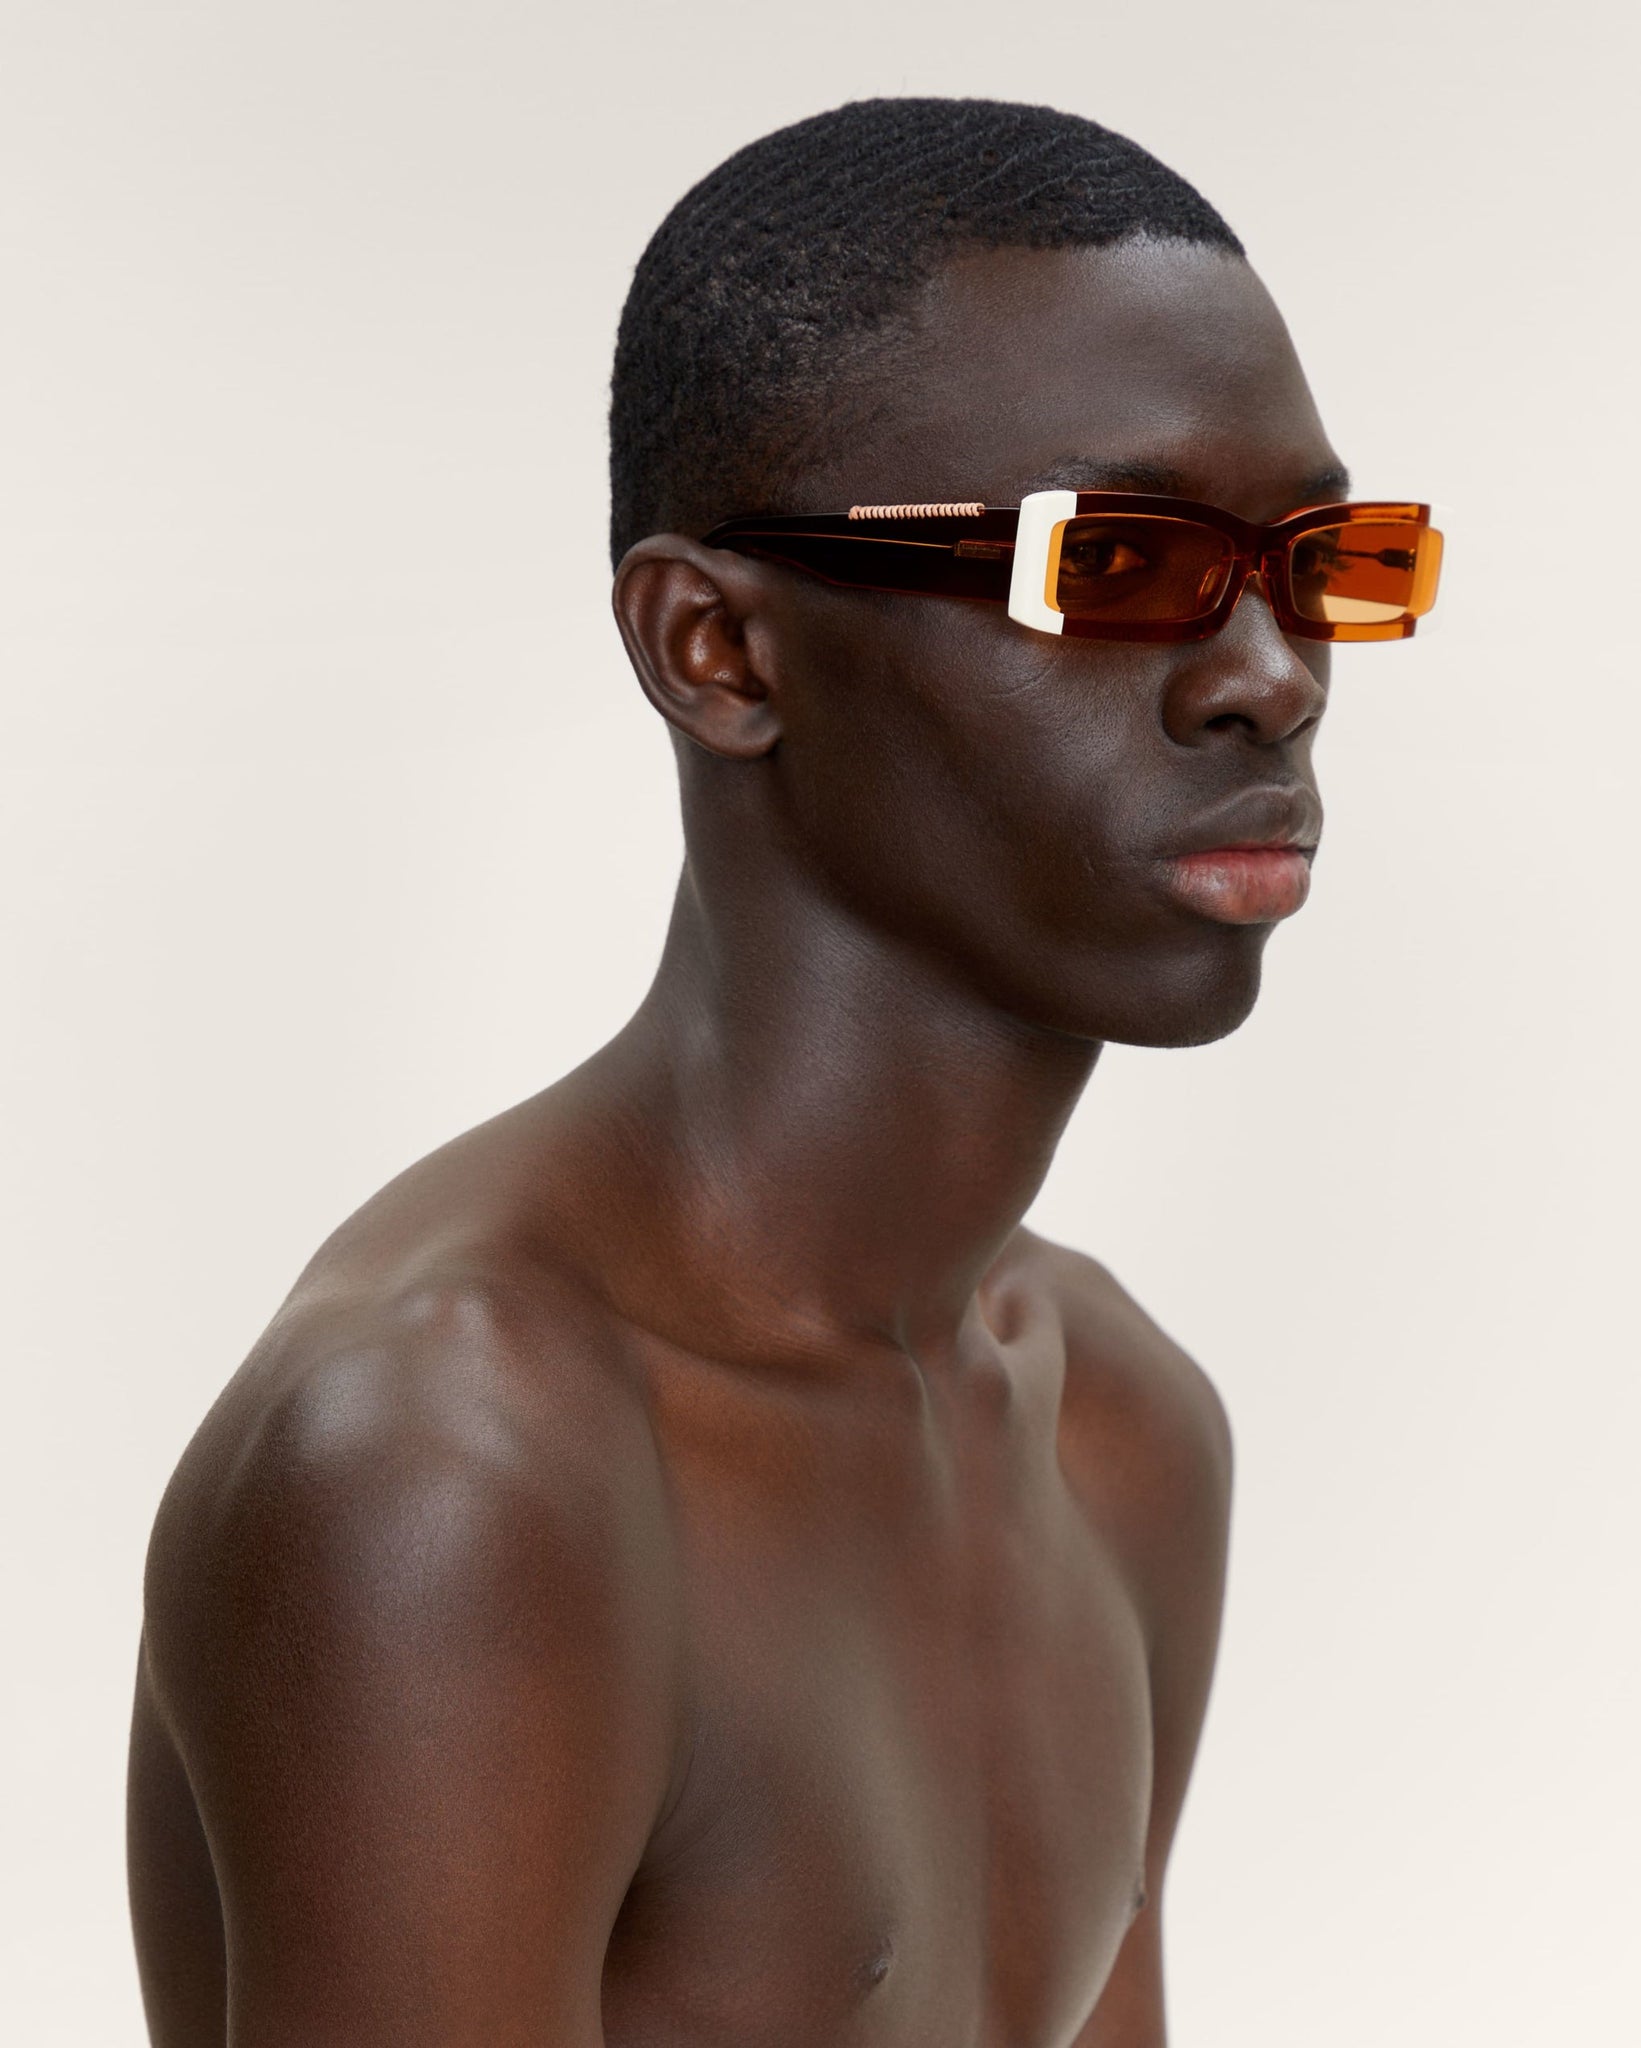 Les lunettes 97 shade of orange